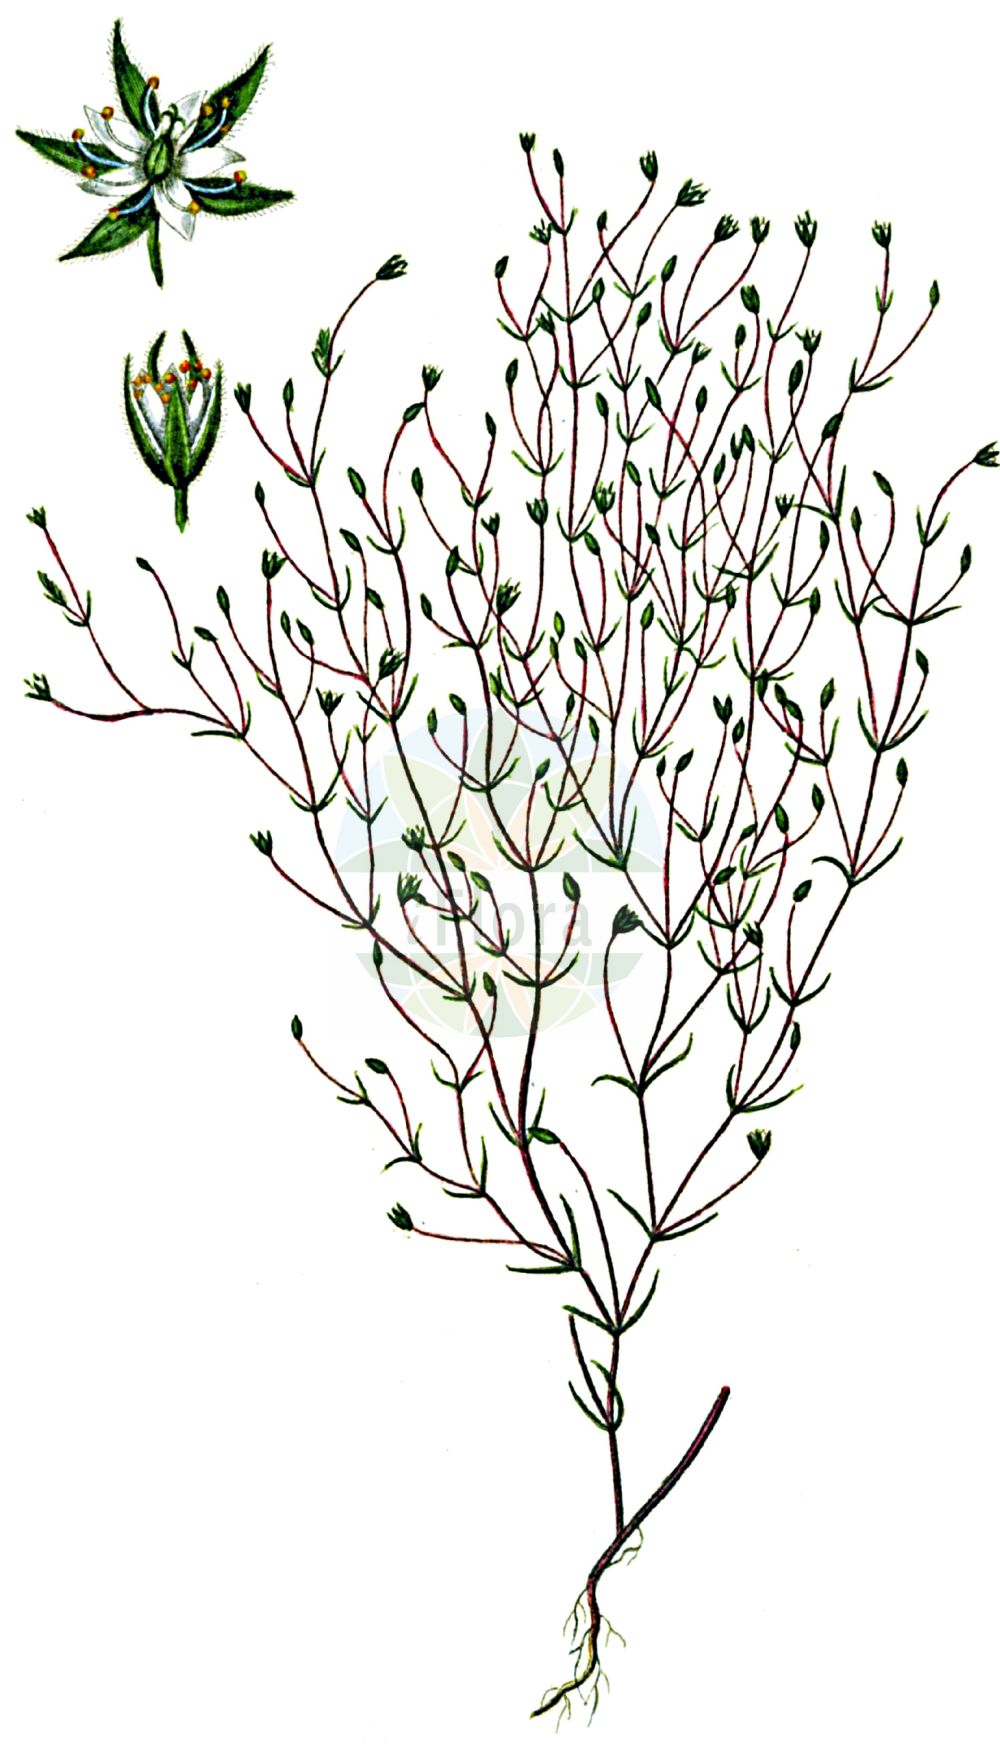 Historische Abbildung von Minuartia hybrida (Feinblättrige Miere - Fine-leaved Sandwort). Das Bild zeigt Blatt, Bluete, Frucht und Same. ---- Historical Drawing of Minuartia hybrida (Feinblättrige Miere - Fine-leaved Sandwort). The image is showing leaf, flower, fruit and seed.(Minuartia hybrida,Feinblättrige Miere,Fine-leaved Sandwort,Alsine hybrida,Alsine laxa,Alsine subulifolia,Alsine tenuifolia,Alsine tenuifolia (L.) Crantz,Arenaria hybrida,Arenaria tenuifolia,Arenaria viscidula,Minuartia birjuczensis,Minuartia hybrida,Minuartia hypanica,Minuartia pseudohybrida,Minuartia tenuifolia,Minuartia tenuifolia subsp. vaillantiana,Feinblaettrige Miere,Feinblatt-Miere,Zart-Miere,Fine-leaved Sandwort,Slender-leaf Sandwort,Minuartia,Miere,Stitchwort,Caryophyllaceae,Nelkengewächse,Pink family,Blatt,Bluete,Frucht,Same,leaf,flower,fruit,seed,Oeder (1761-1883))